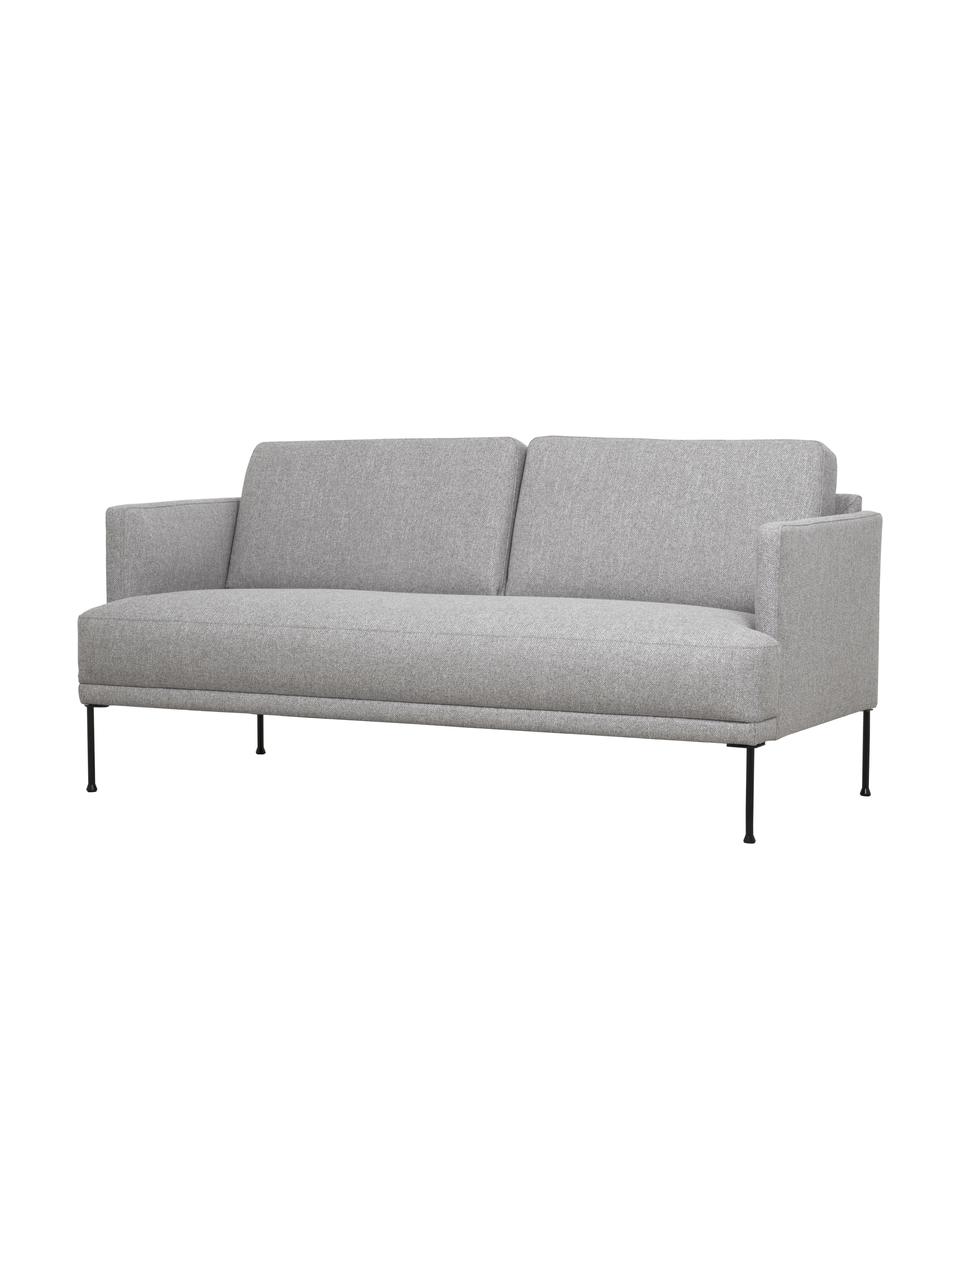 Sofa Fluente (2-Sitzer) mit Metall-Füßen, Bezug: 80% Polyester, 20% Ramie , Gestell: Massives Kiefernholz, FSC, Füße: Metall, pulverbeschichtet, Webstoff Hellgrau, B 166 x T 85 cm